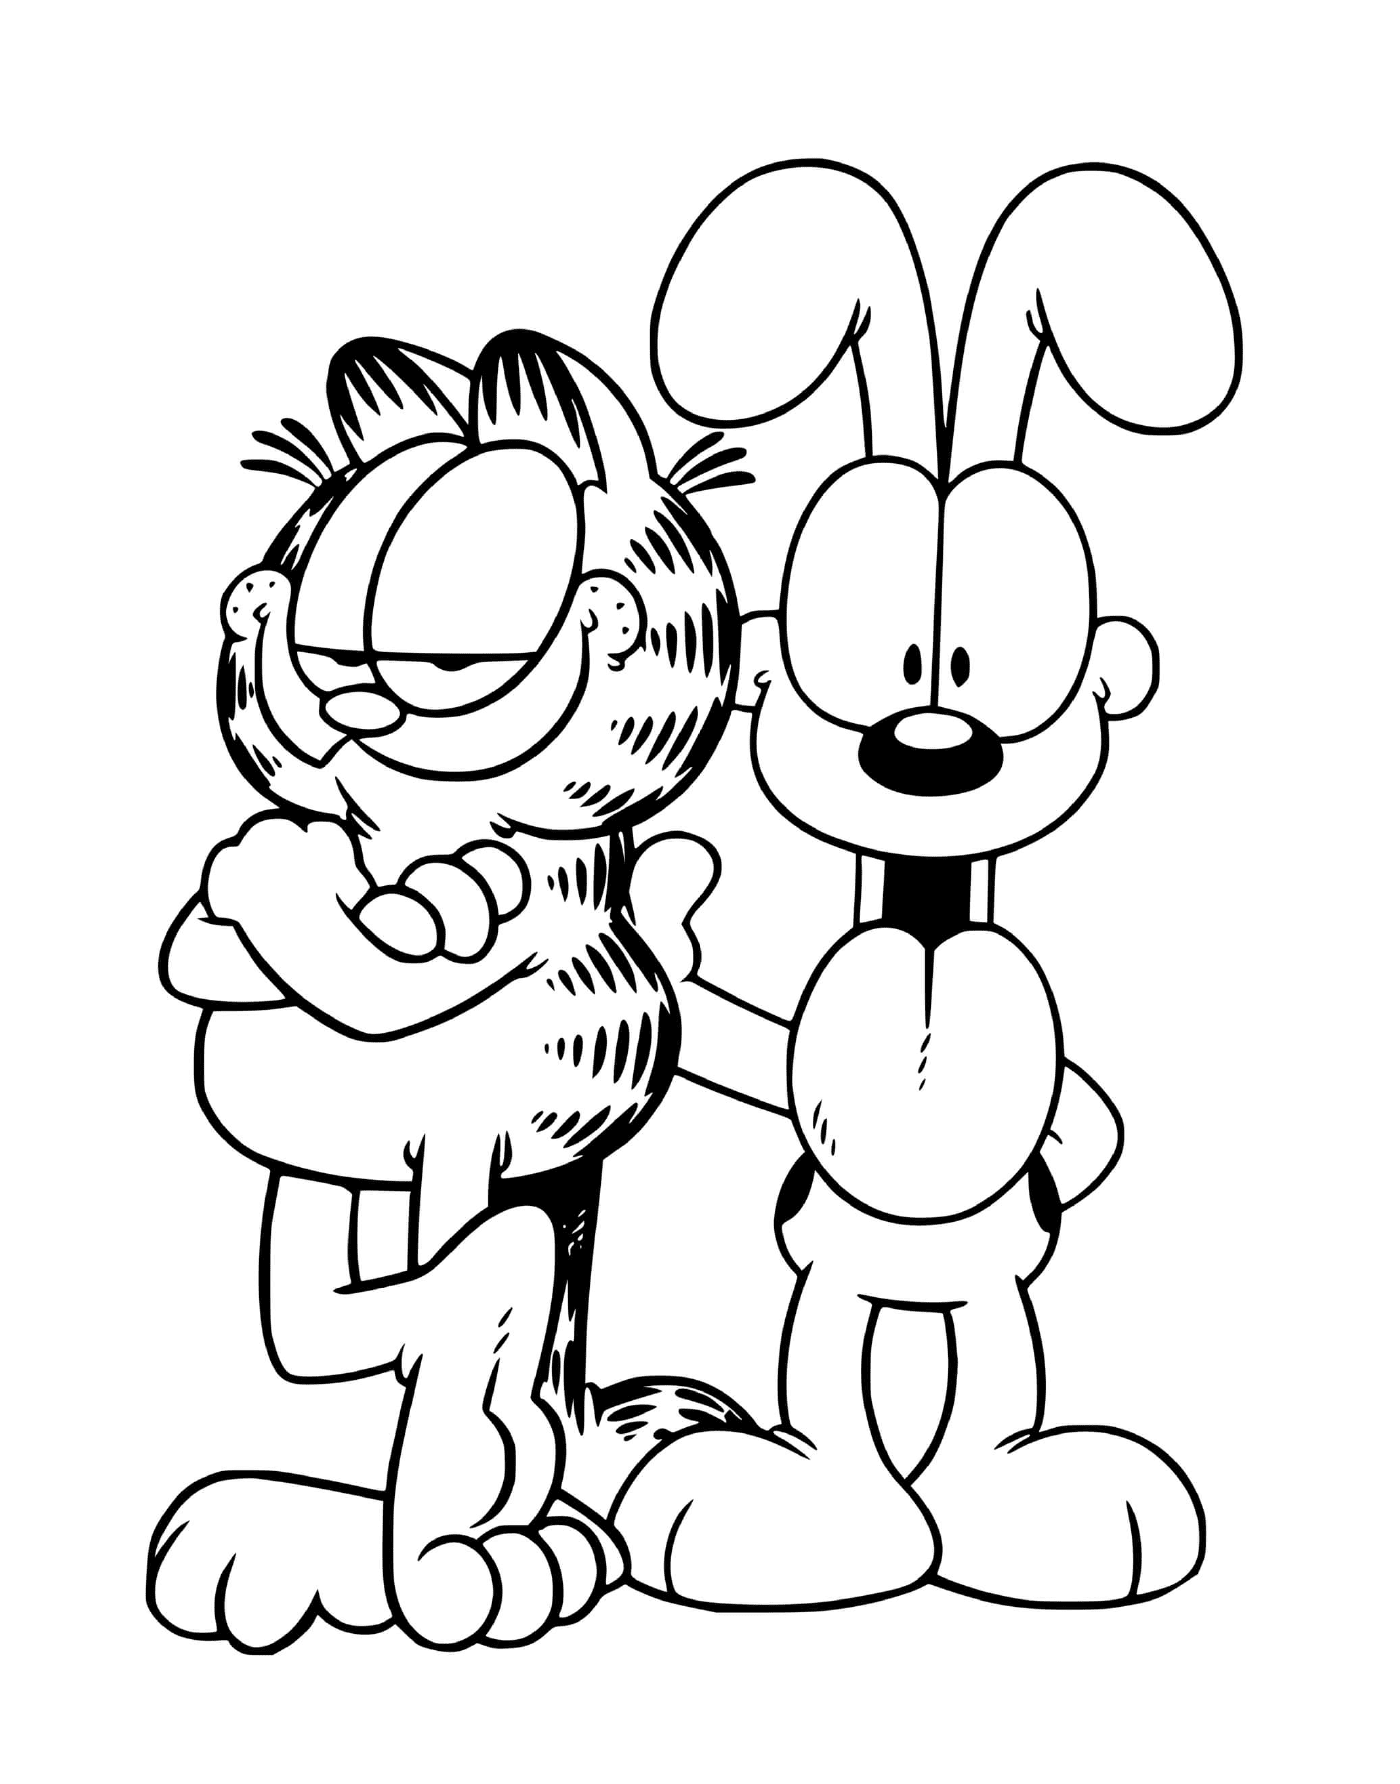  Garfield und Odie, beste Freunde 